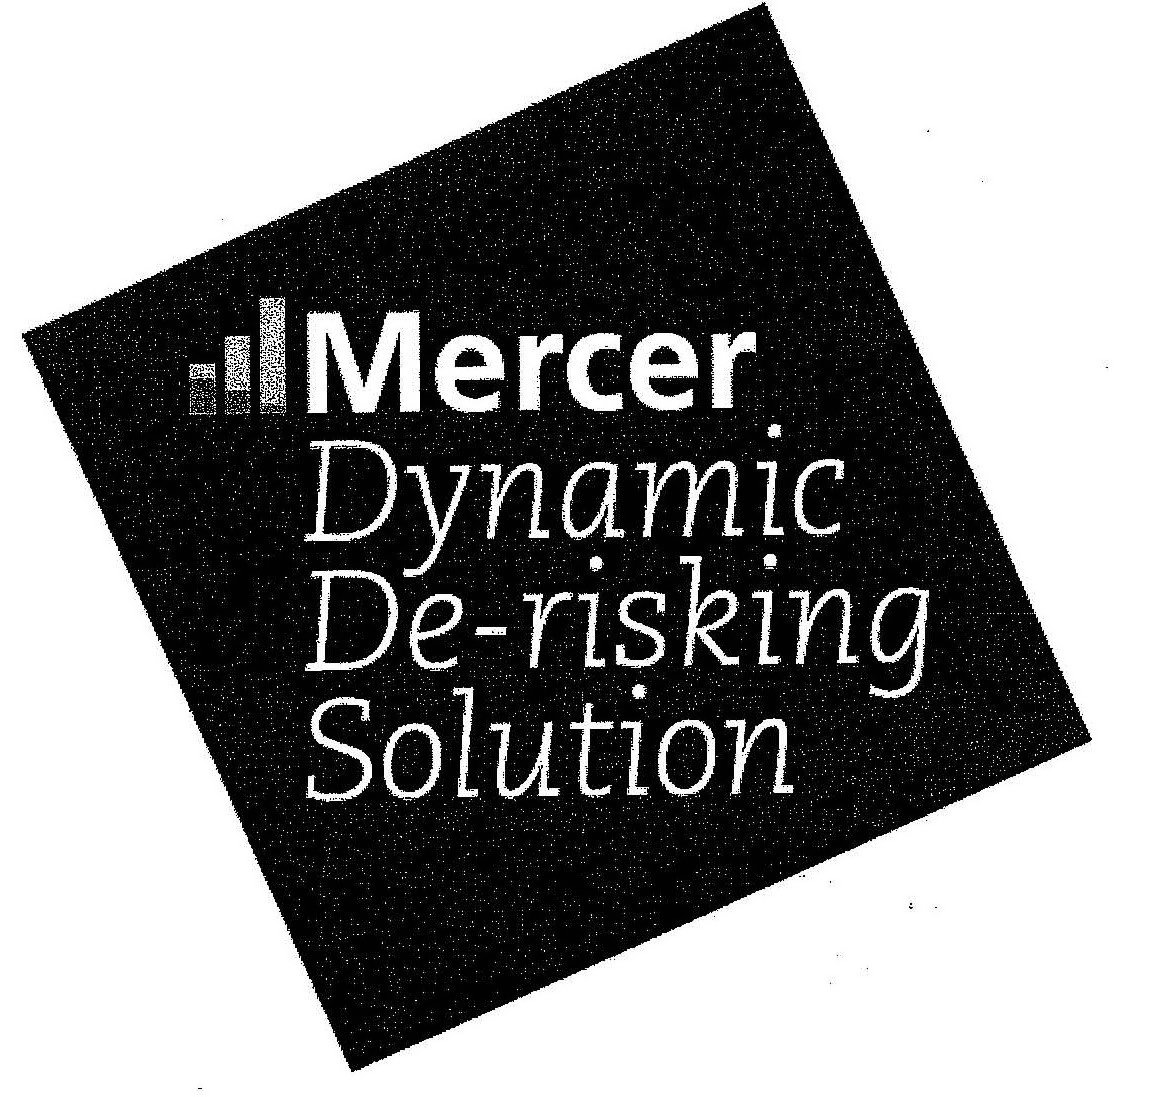  MERCER DYNAMIC DE-RISKING SOLUTION